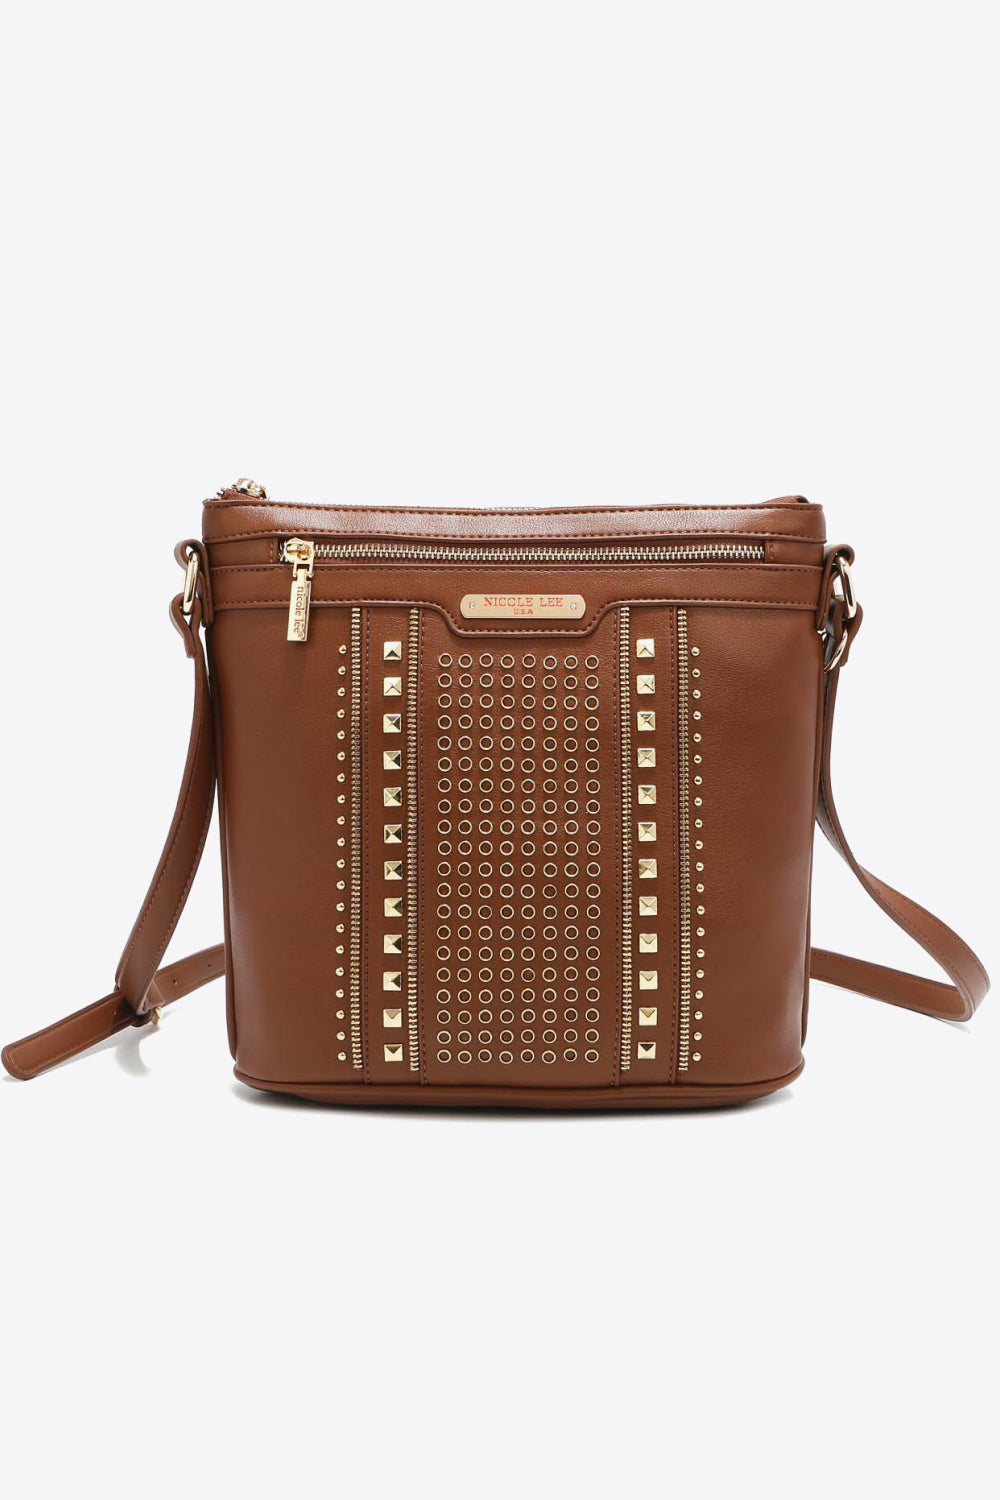 Nicole Lee USA Love Handbag-Trendsi-Chestnut-One Size-[option4]-[option5]-[option6]-[option7]-[option8]-Shop-Boutique-Clothing-for-Women-Online